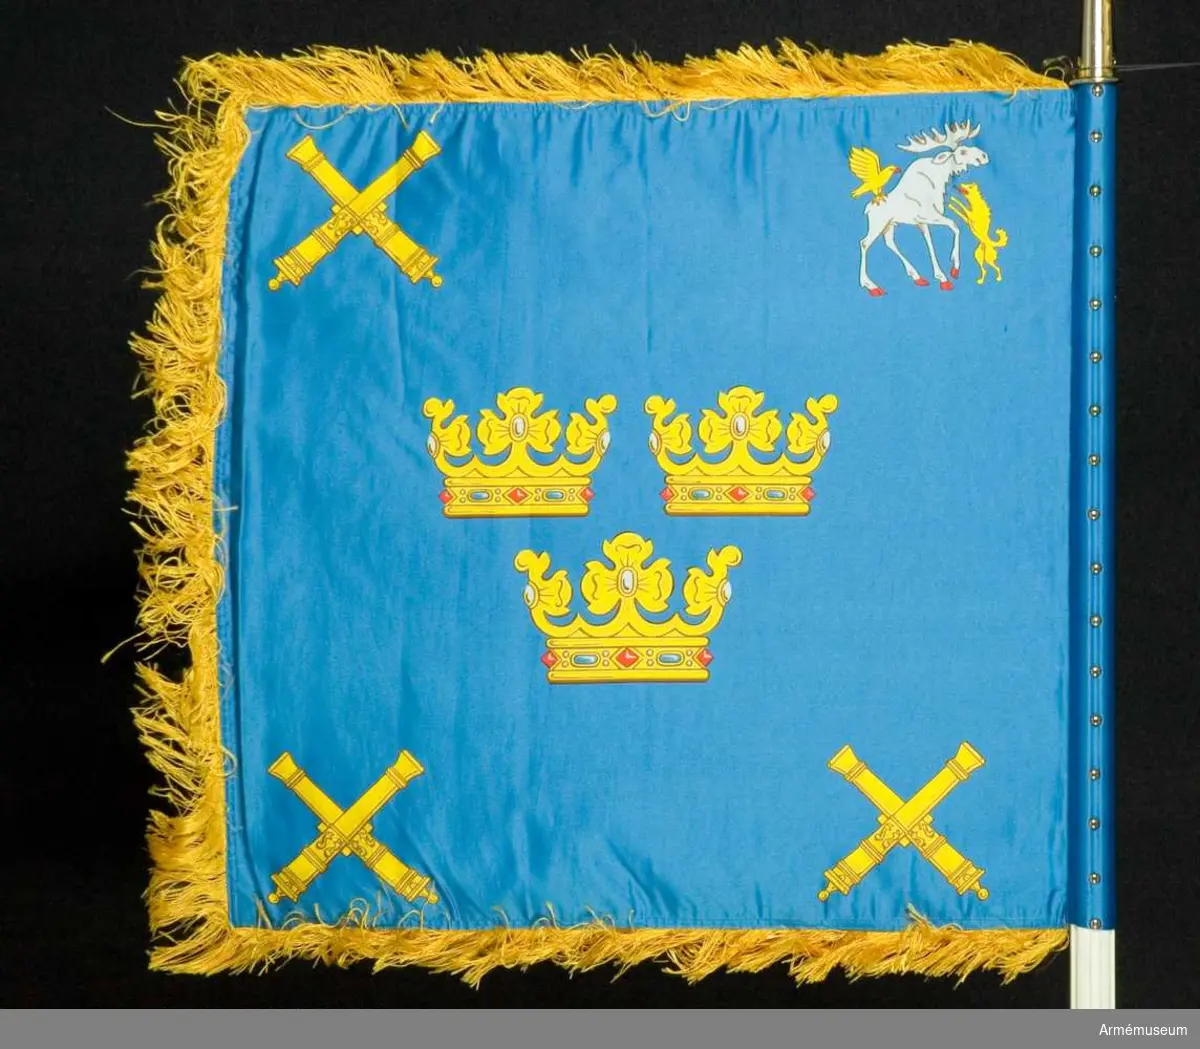 Text på doppsko: "Vaktstandar tillverkad 1986
Kungliga Norrlands Artilleriregemente 16 juni 1938 Gustav V"

